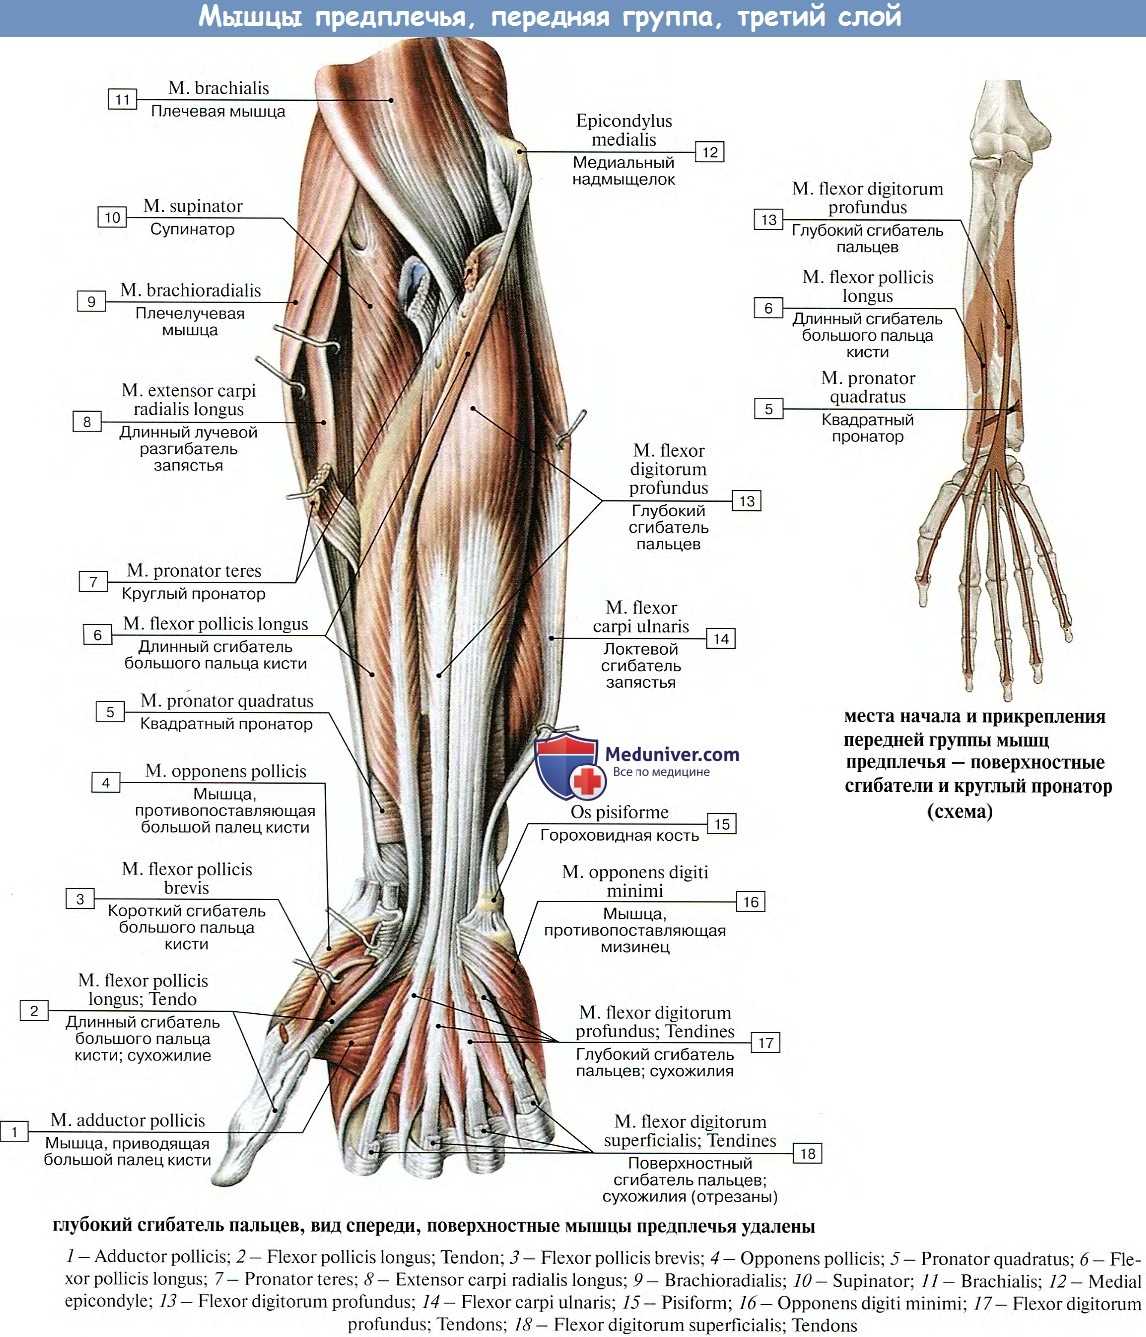 Мышцы предплечья человека передняя и задняя группы, их функции, иннервация и кровоснабжение (таблица)